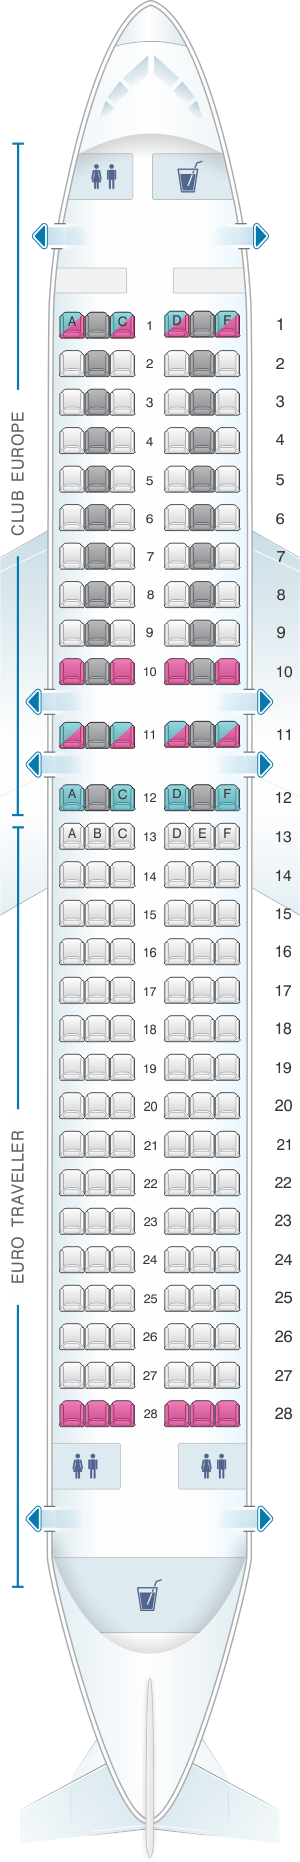 British Airways A320neo Seat Map